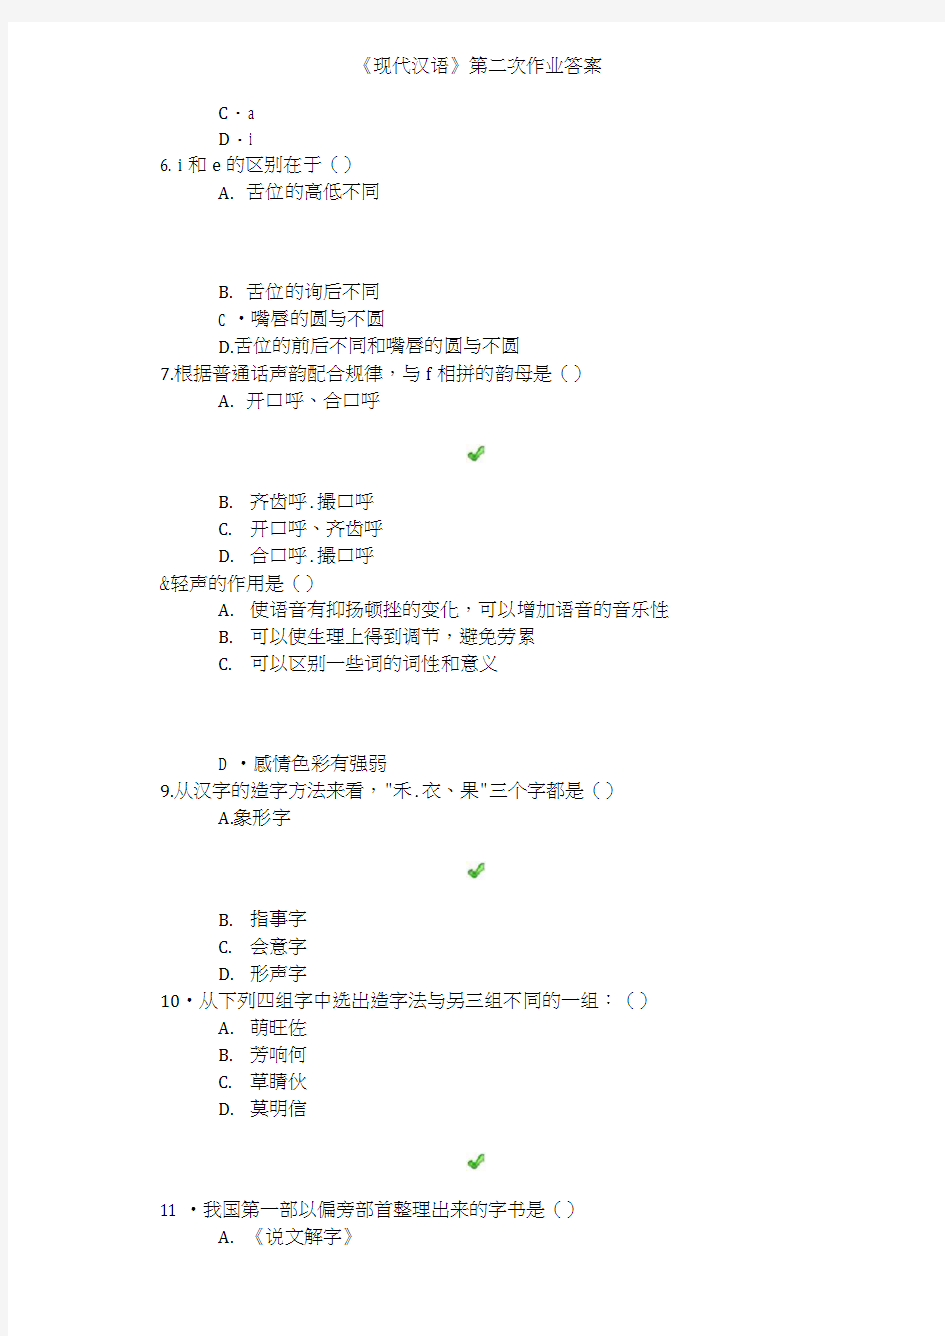 《现代汉语》第二次作业答案(20201227022246)